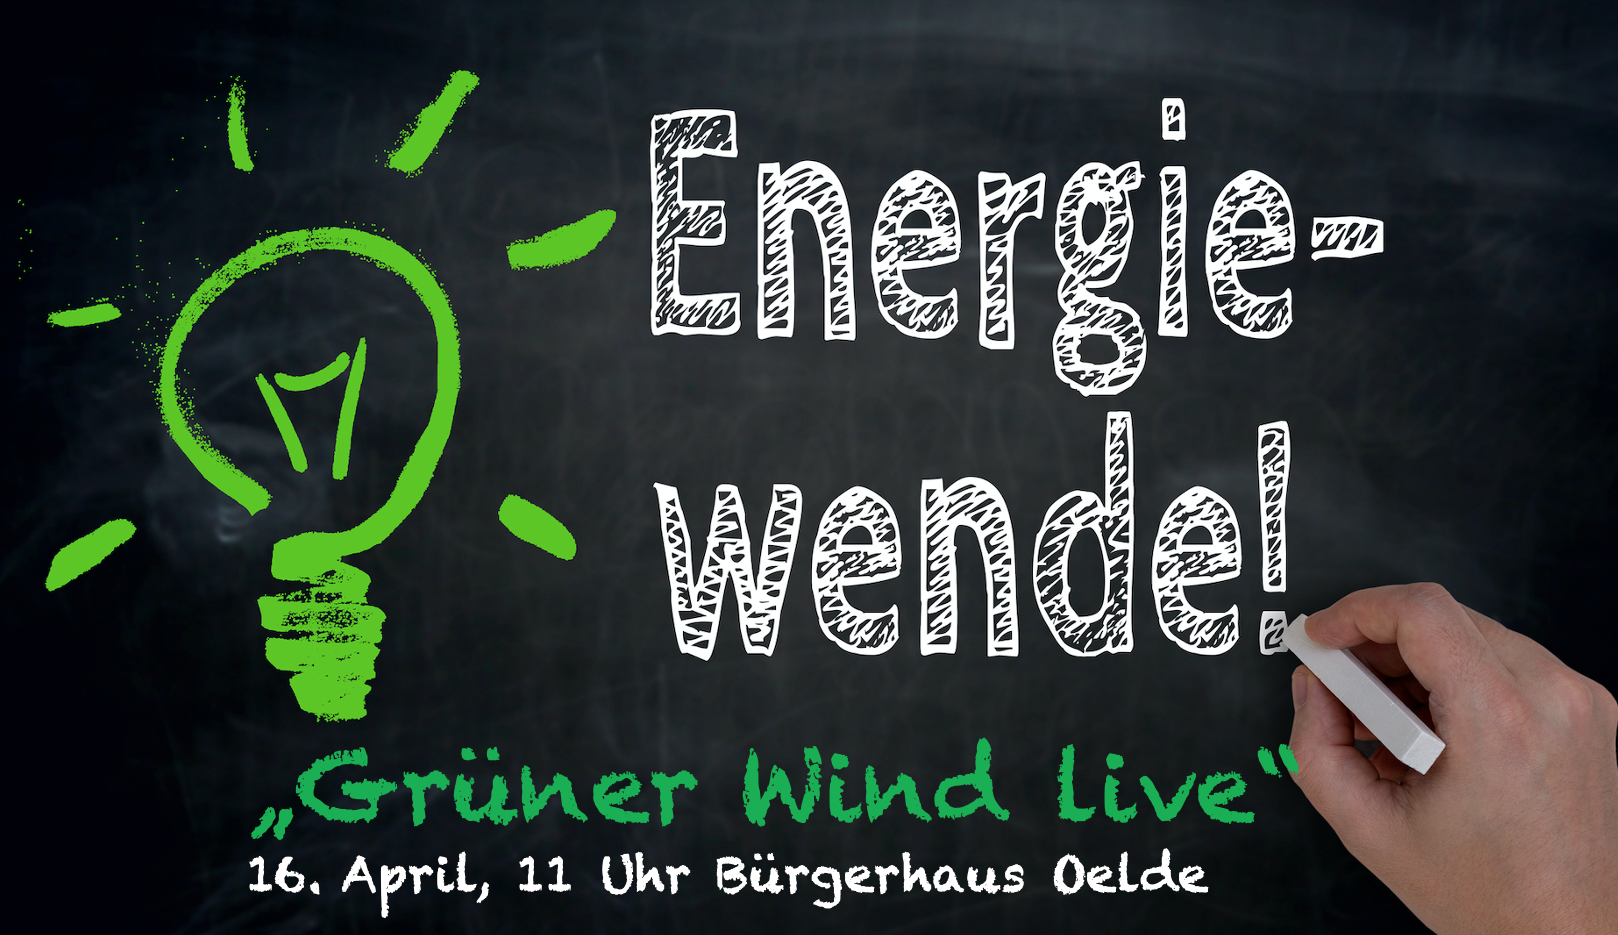 Energiwende! Grüner Wind live 16. April, 11 Uhr Bürgerhaus Oelde